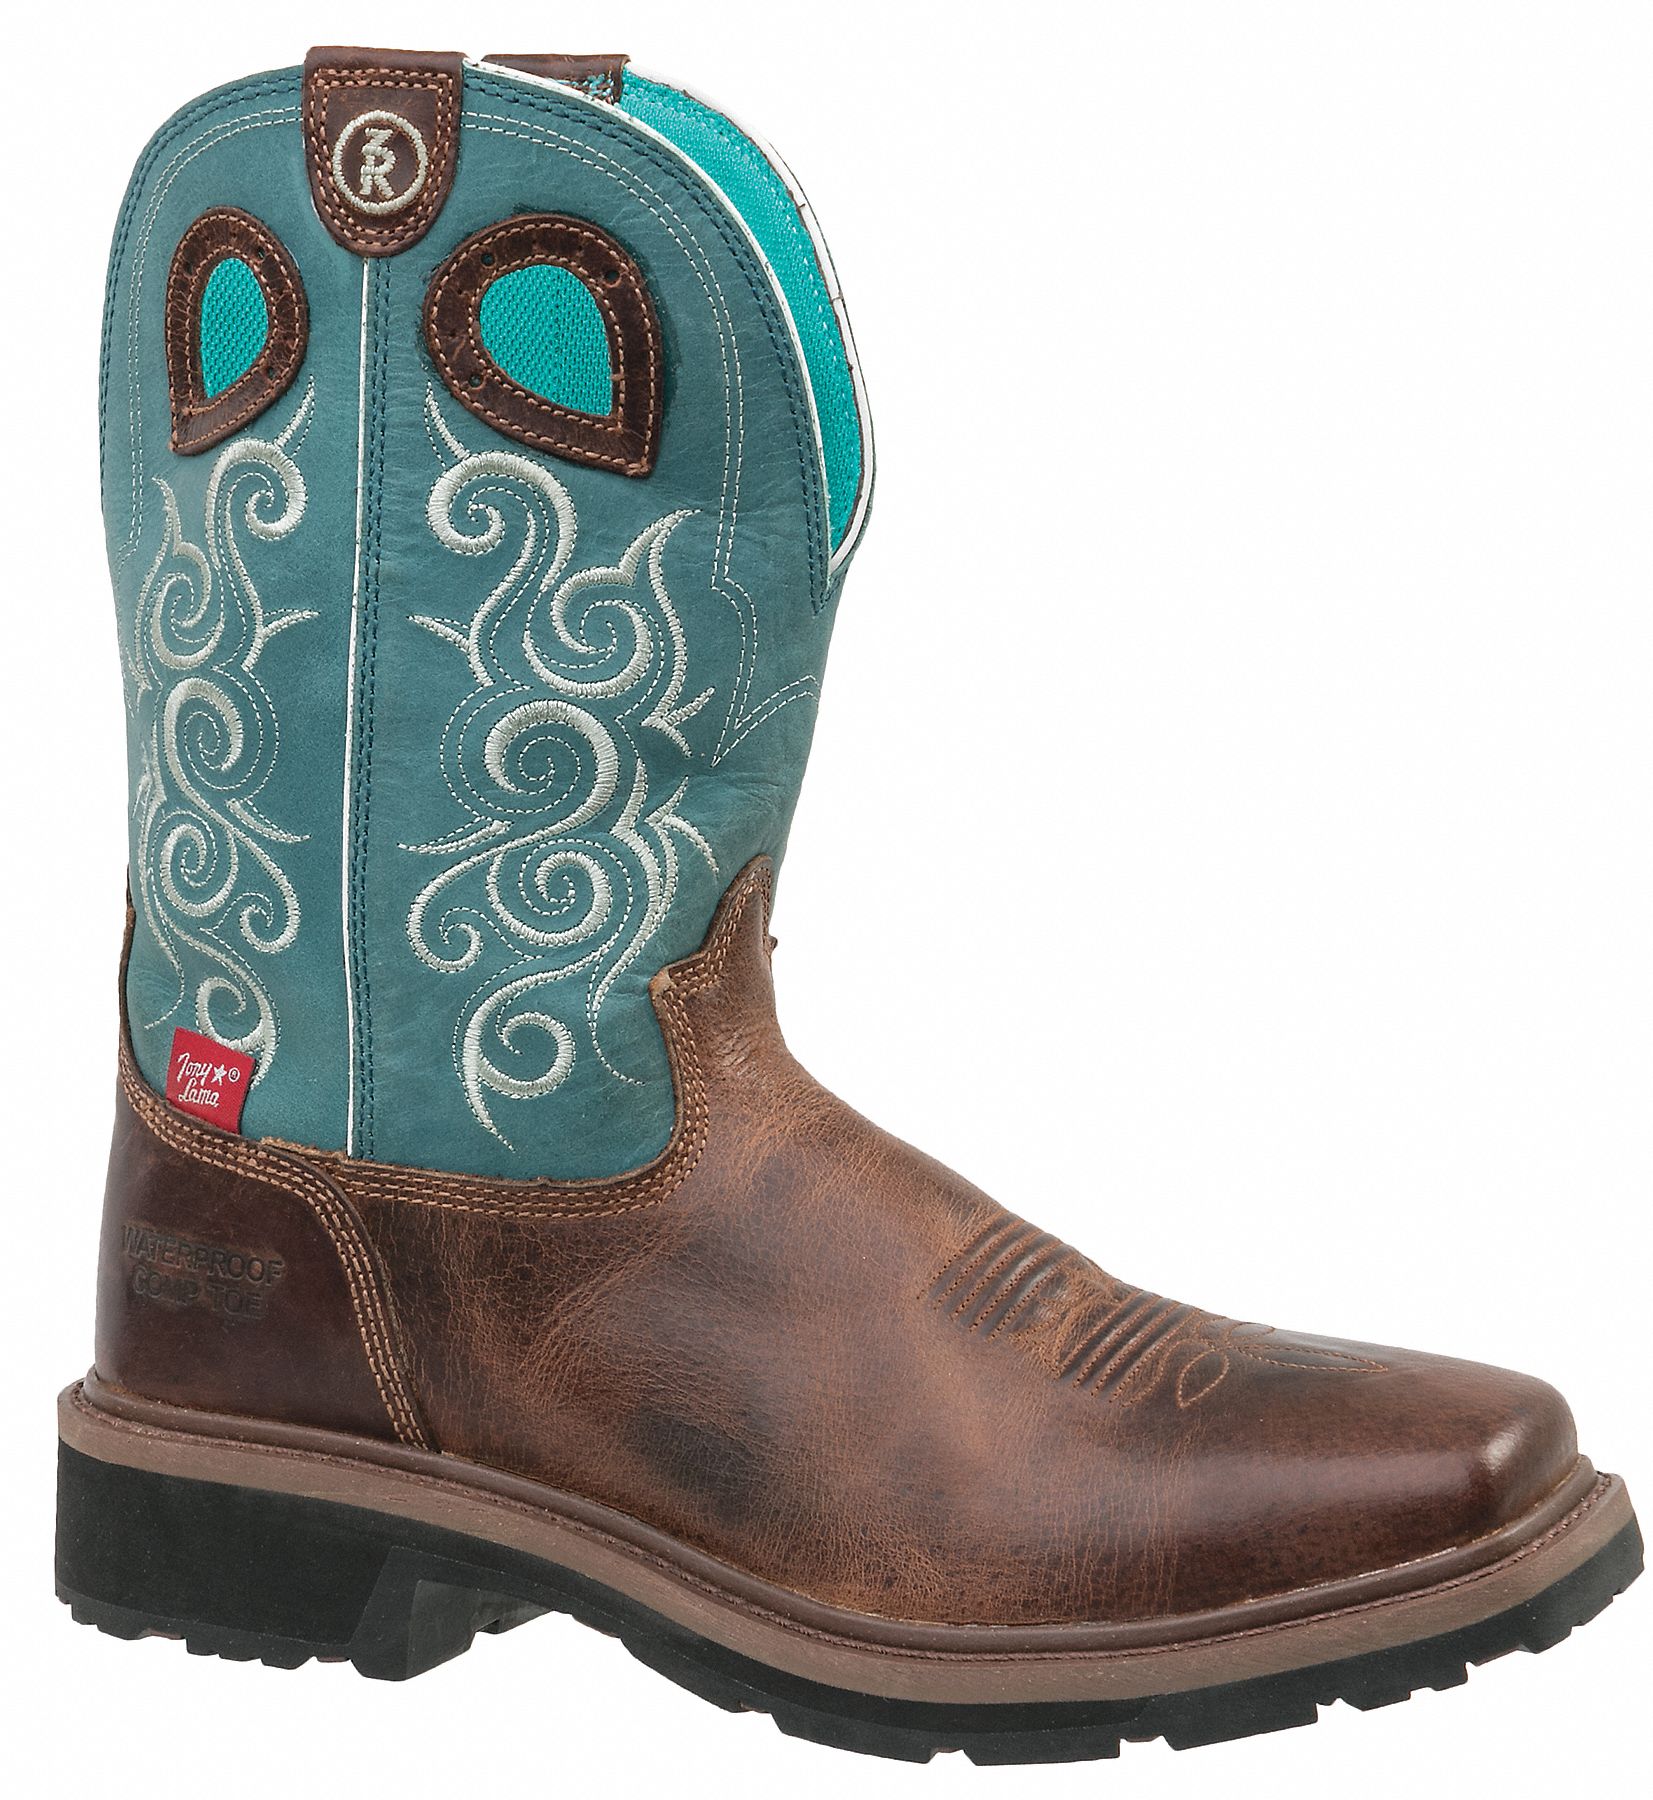 women's composite toe cowboy boots